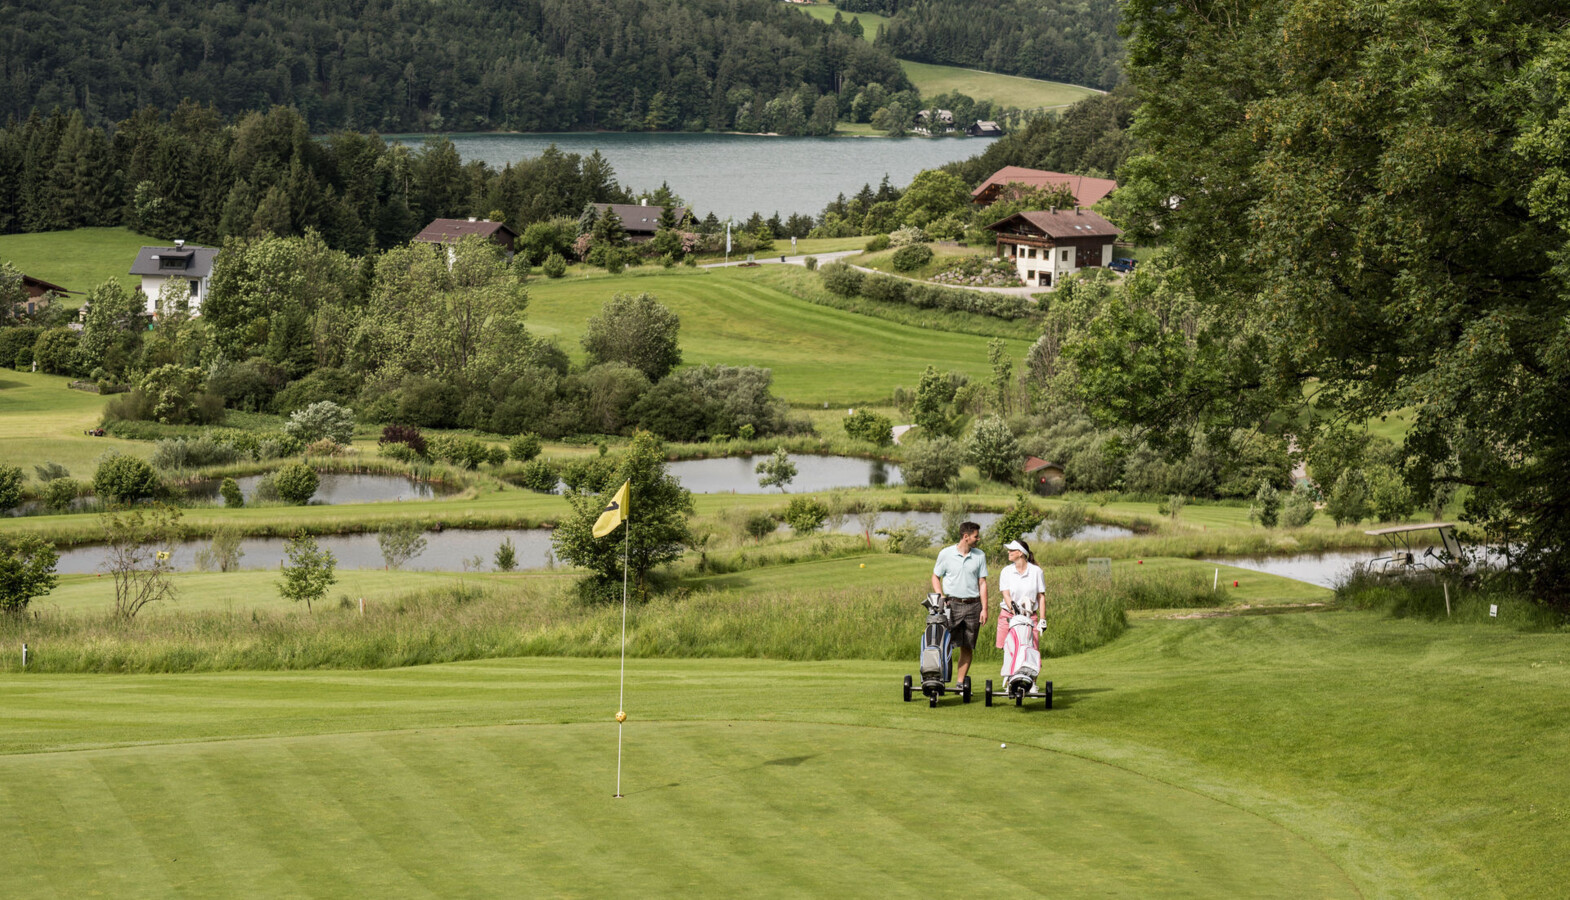 Pärchen auf dem 9 Loch Golfplatz des Golfclub Waldhof mit Blick auf den Fuschlsee.